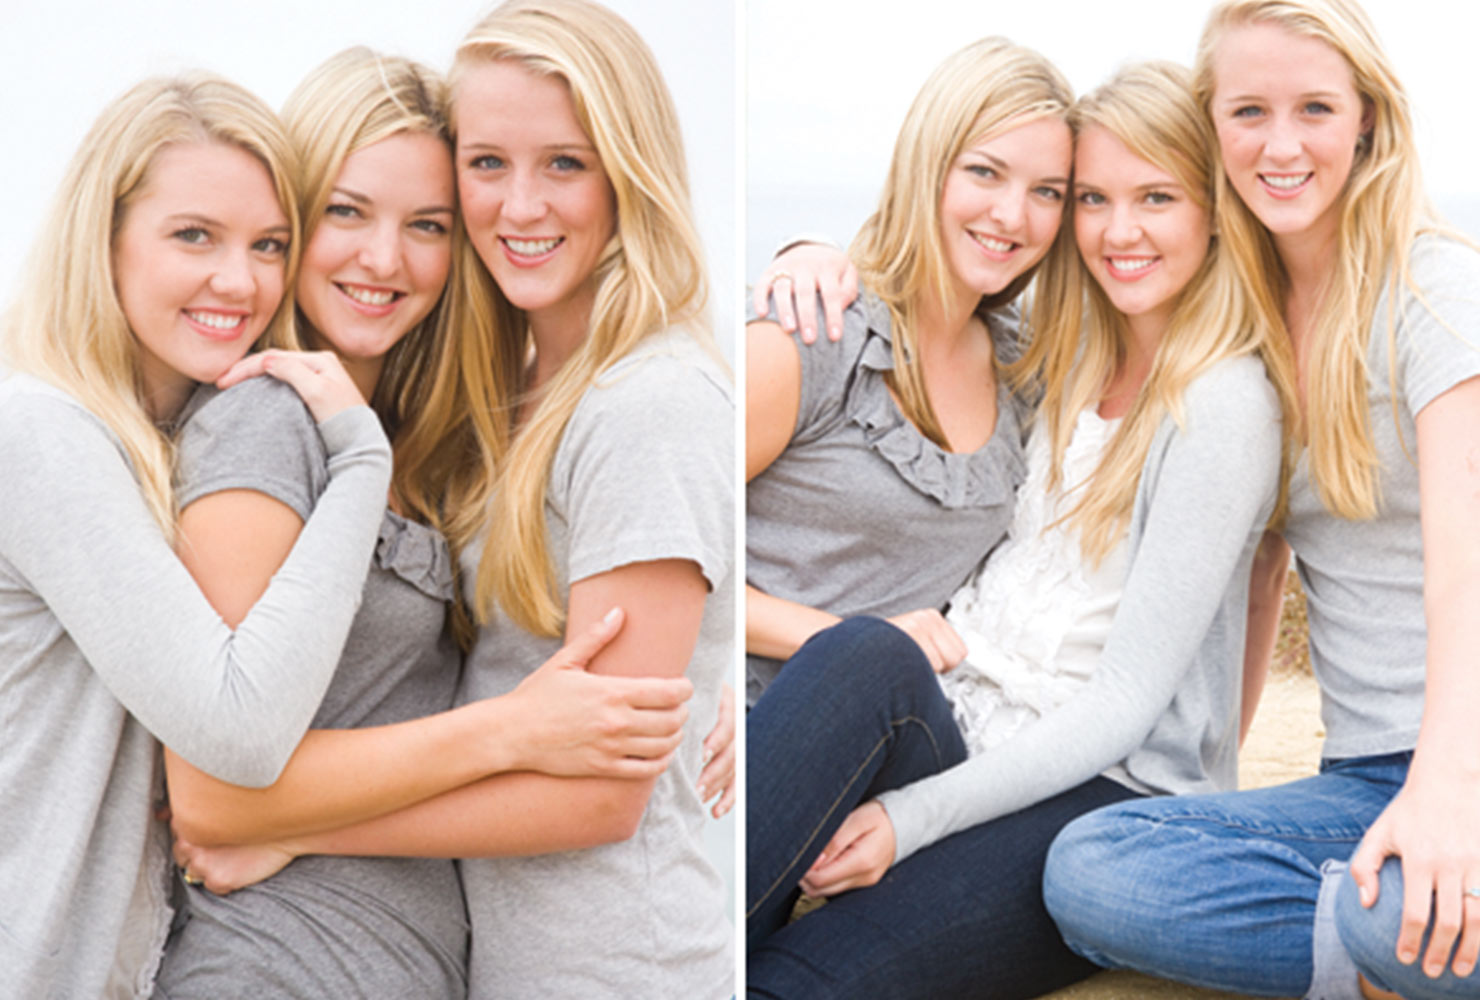 sibling photo ideas 3 blonde sisters